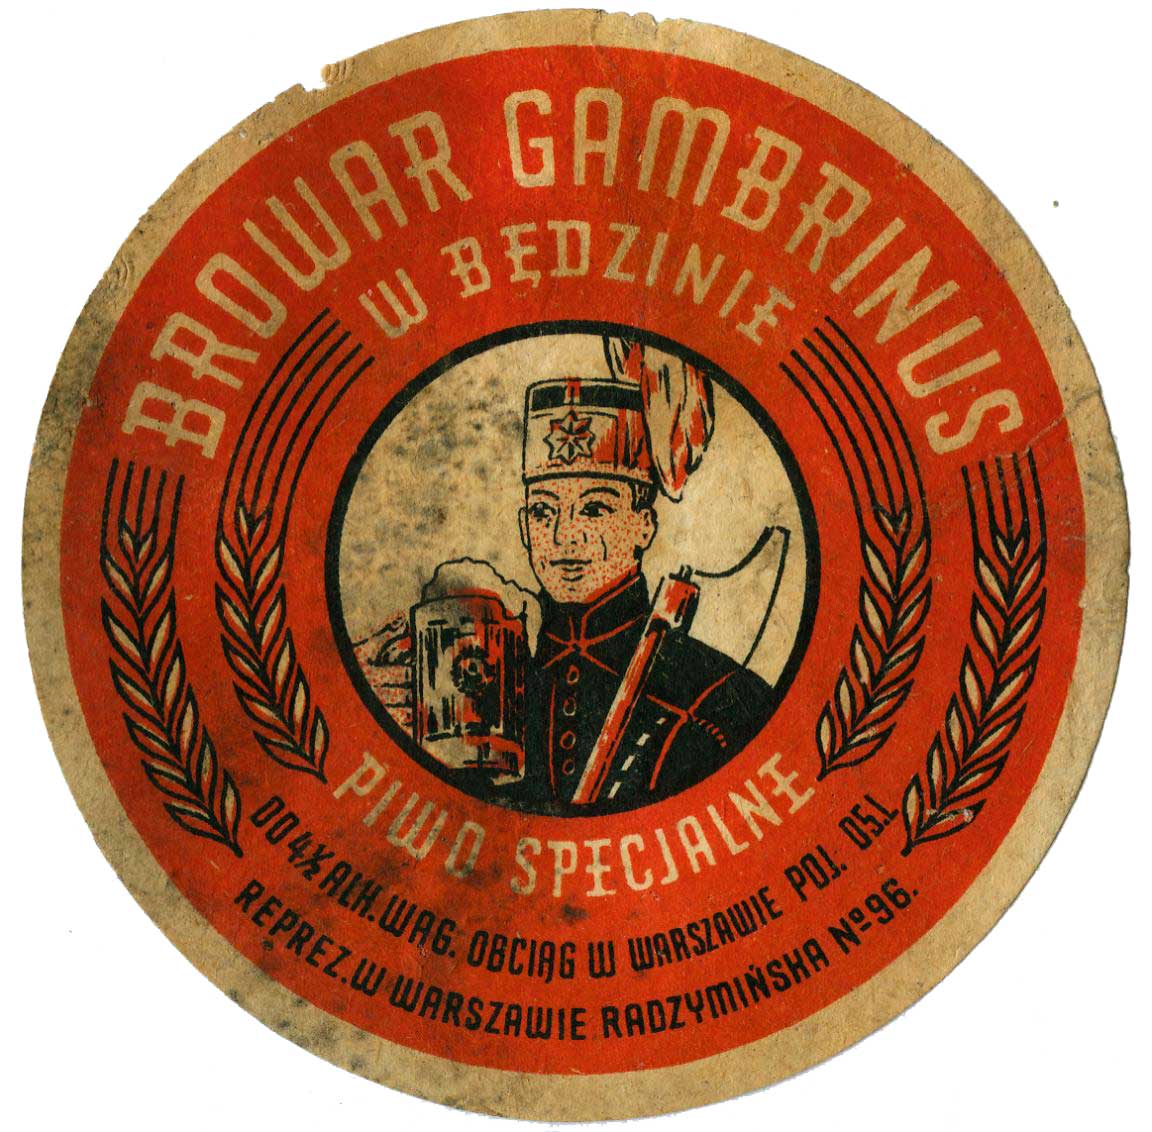 browar Gambrinus, reprez. w Warszawie Radzymińska 96